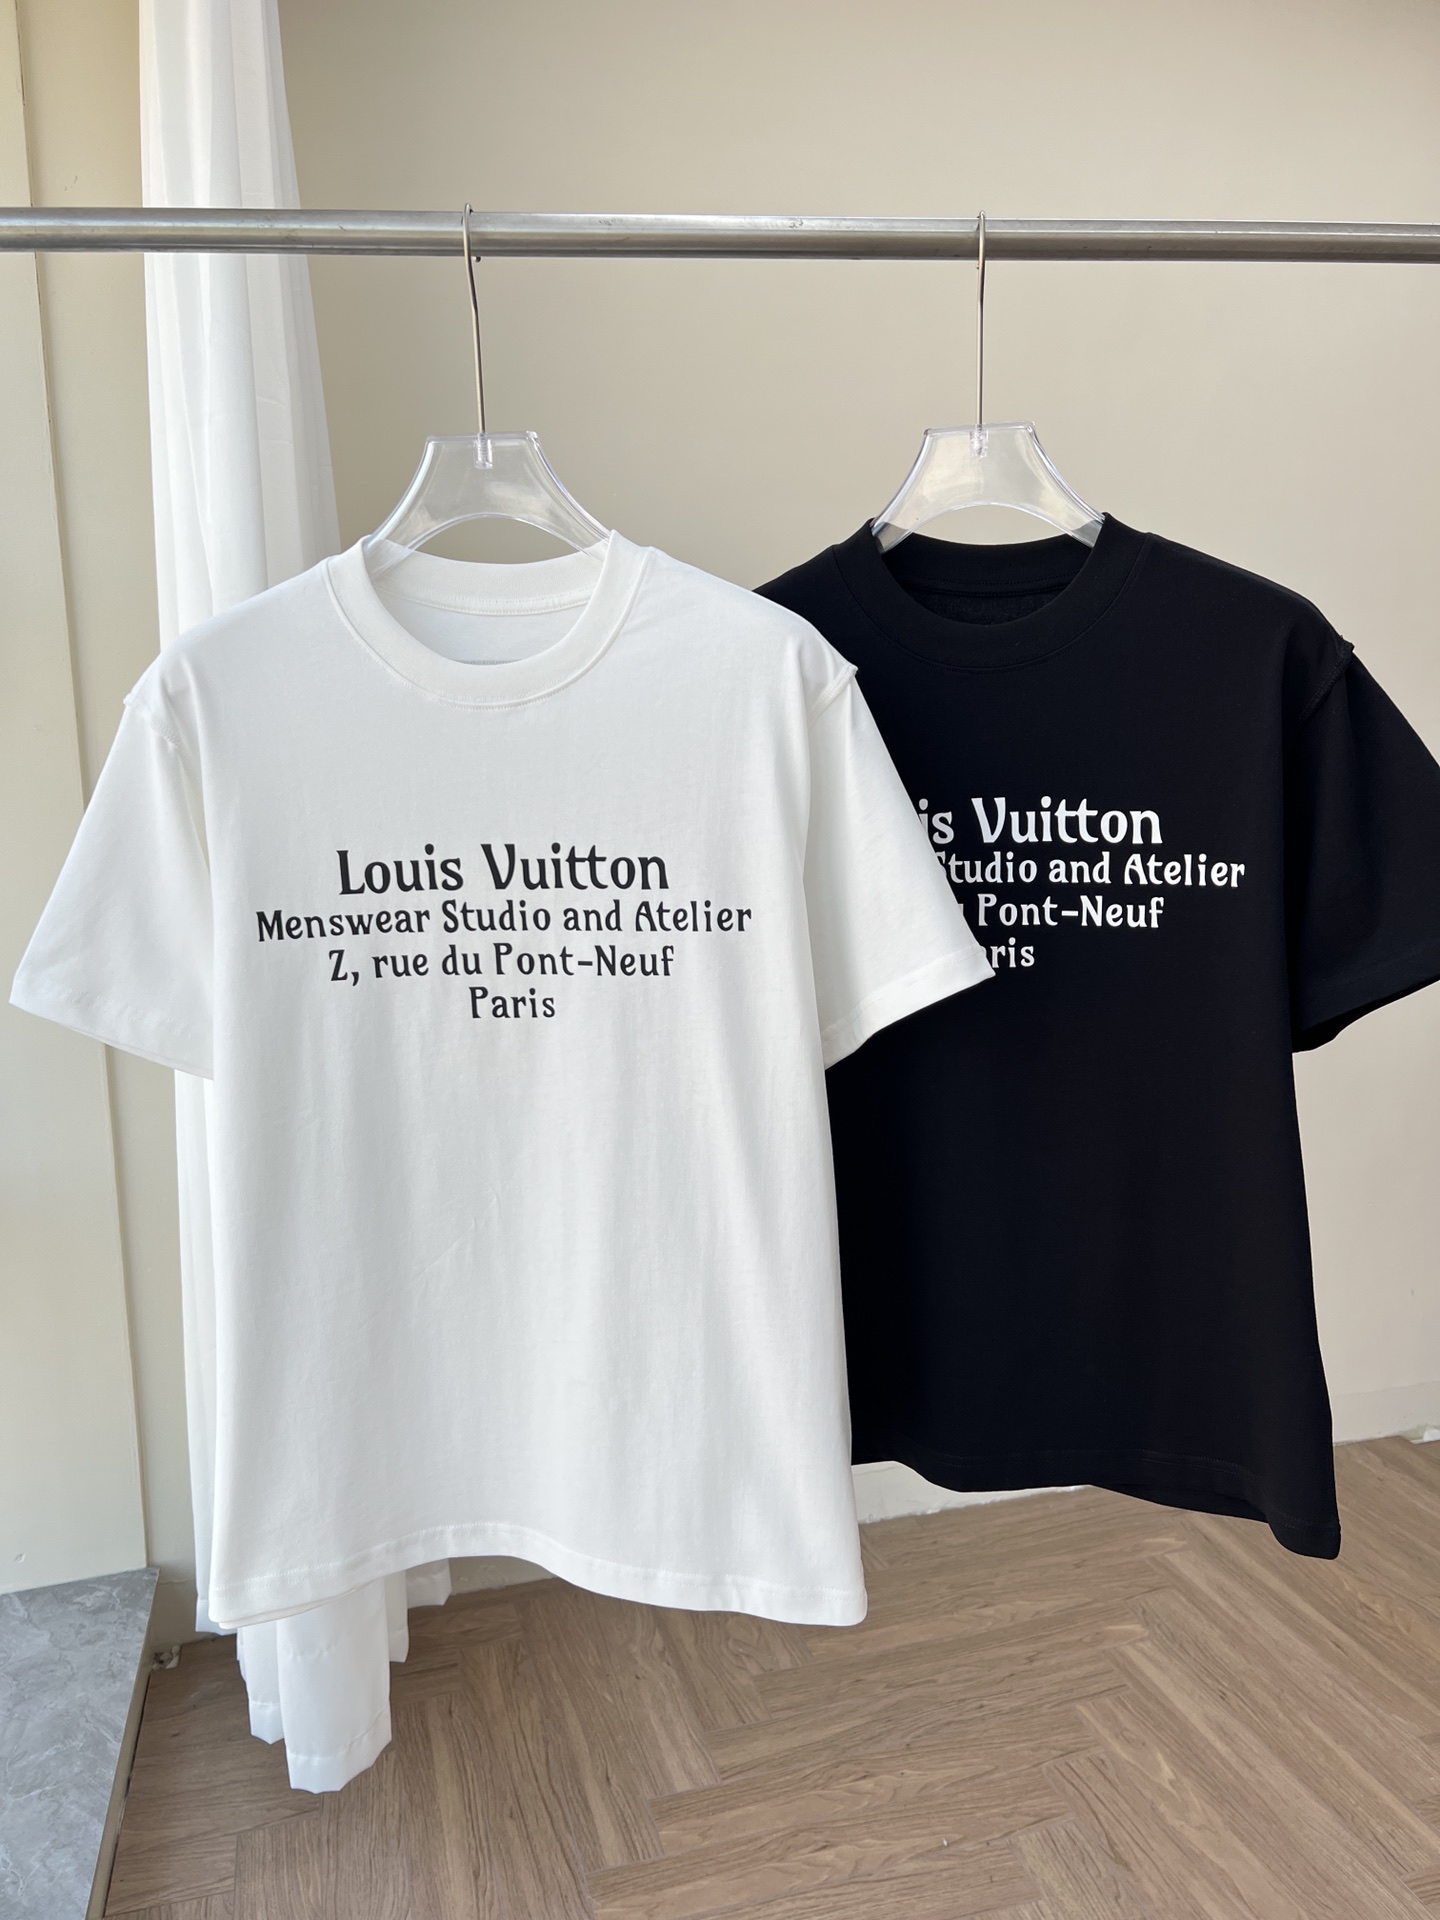 Authentic LOUIS VUITTON Tshirt #241-003-132-4422